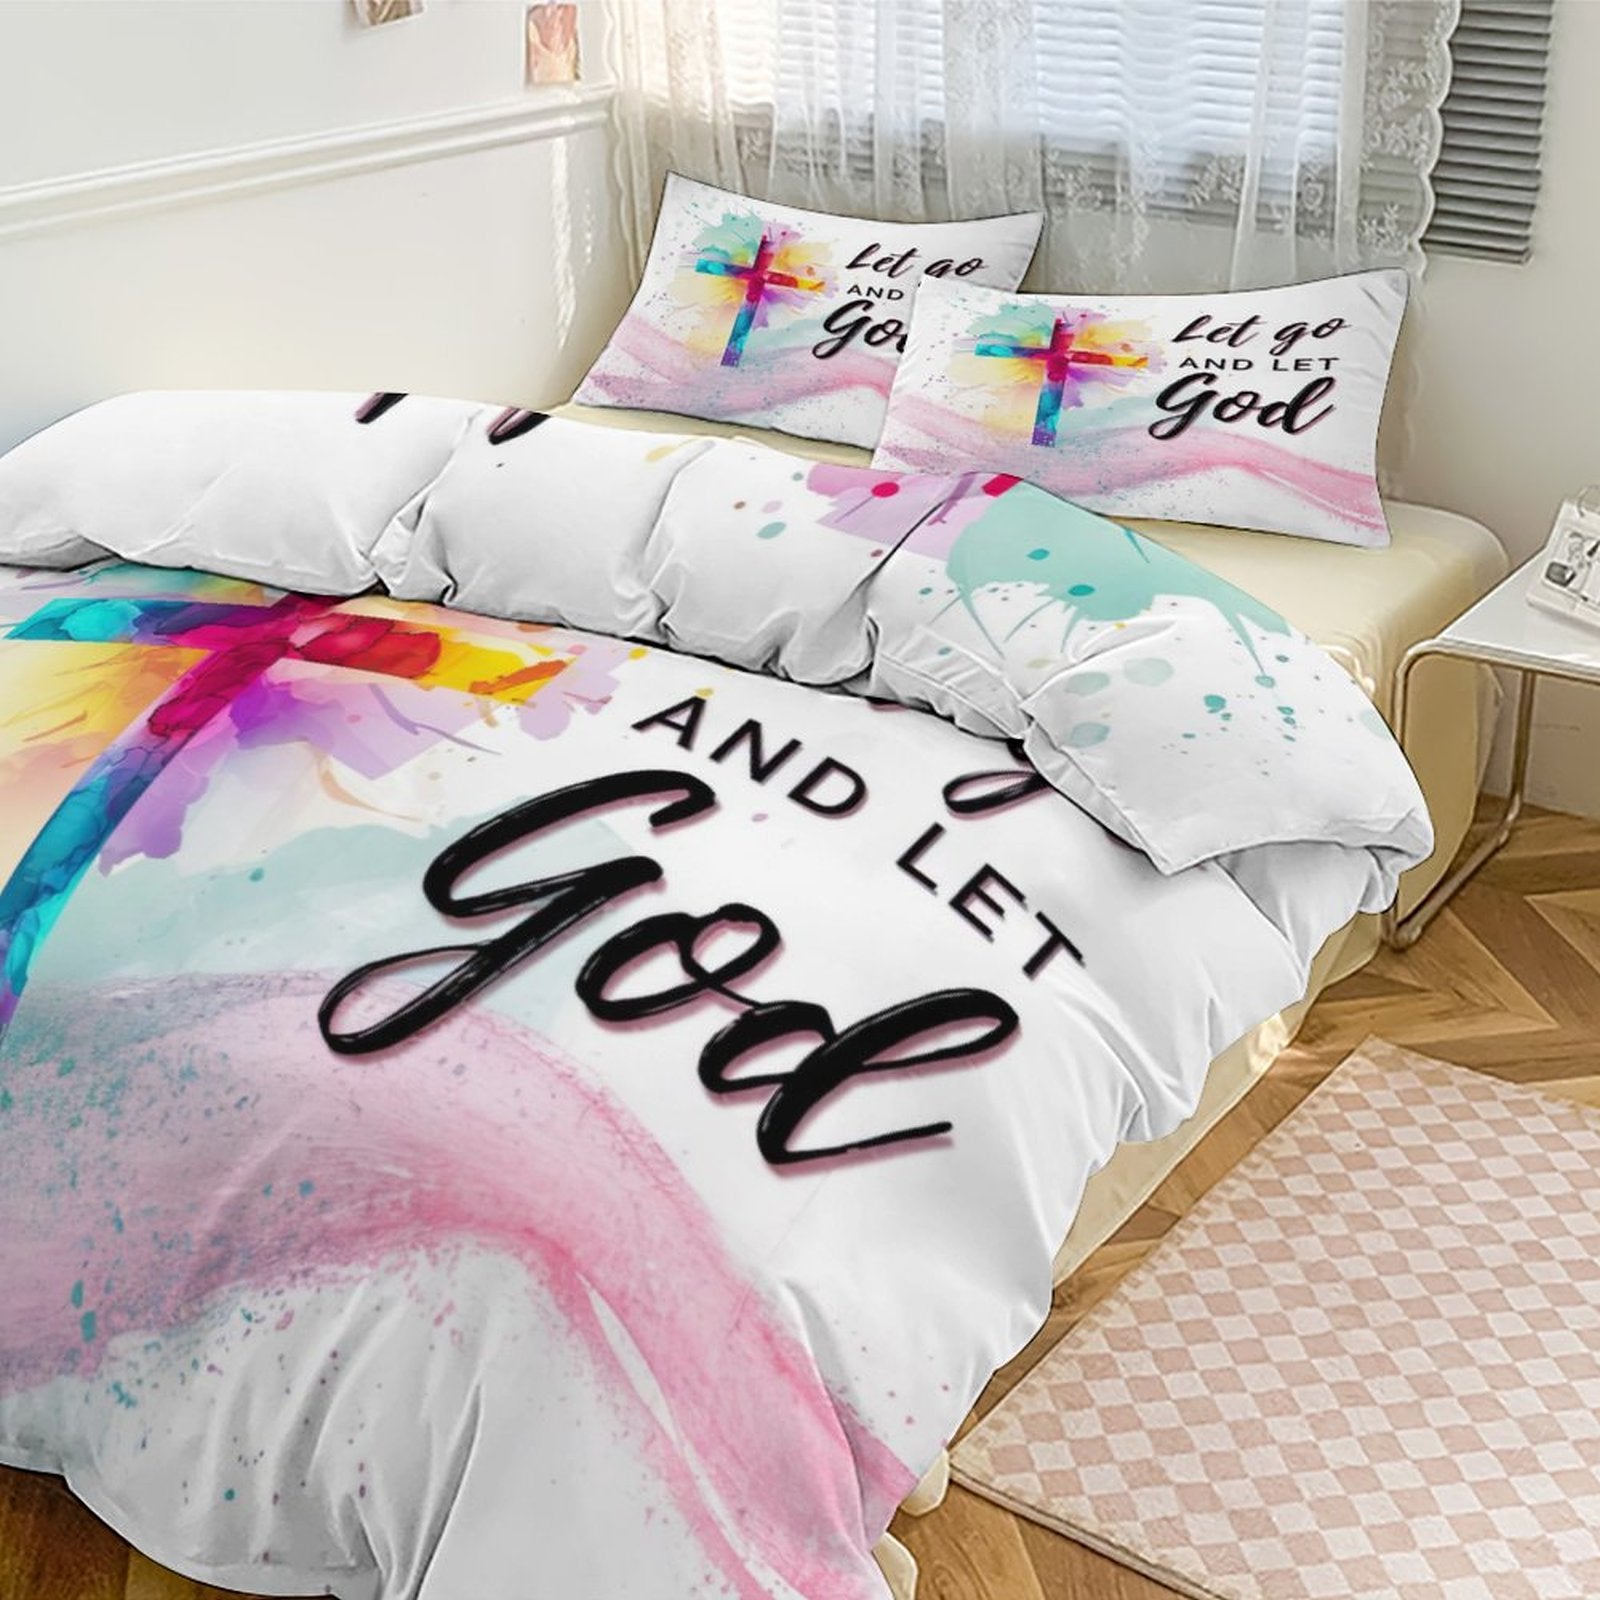 Let Go And Let God 3-Piece Christian Comforter Bedding Set-86"×70"/ 218×177cm SALE-Personal Design